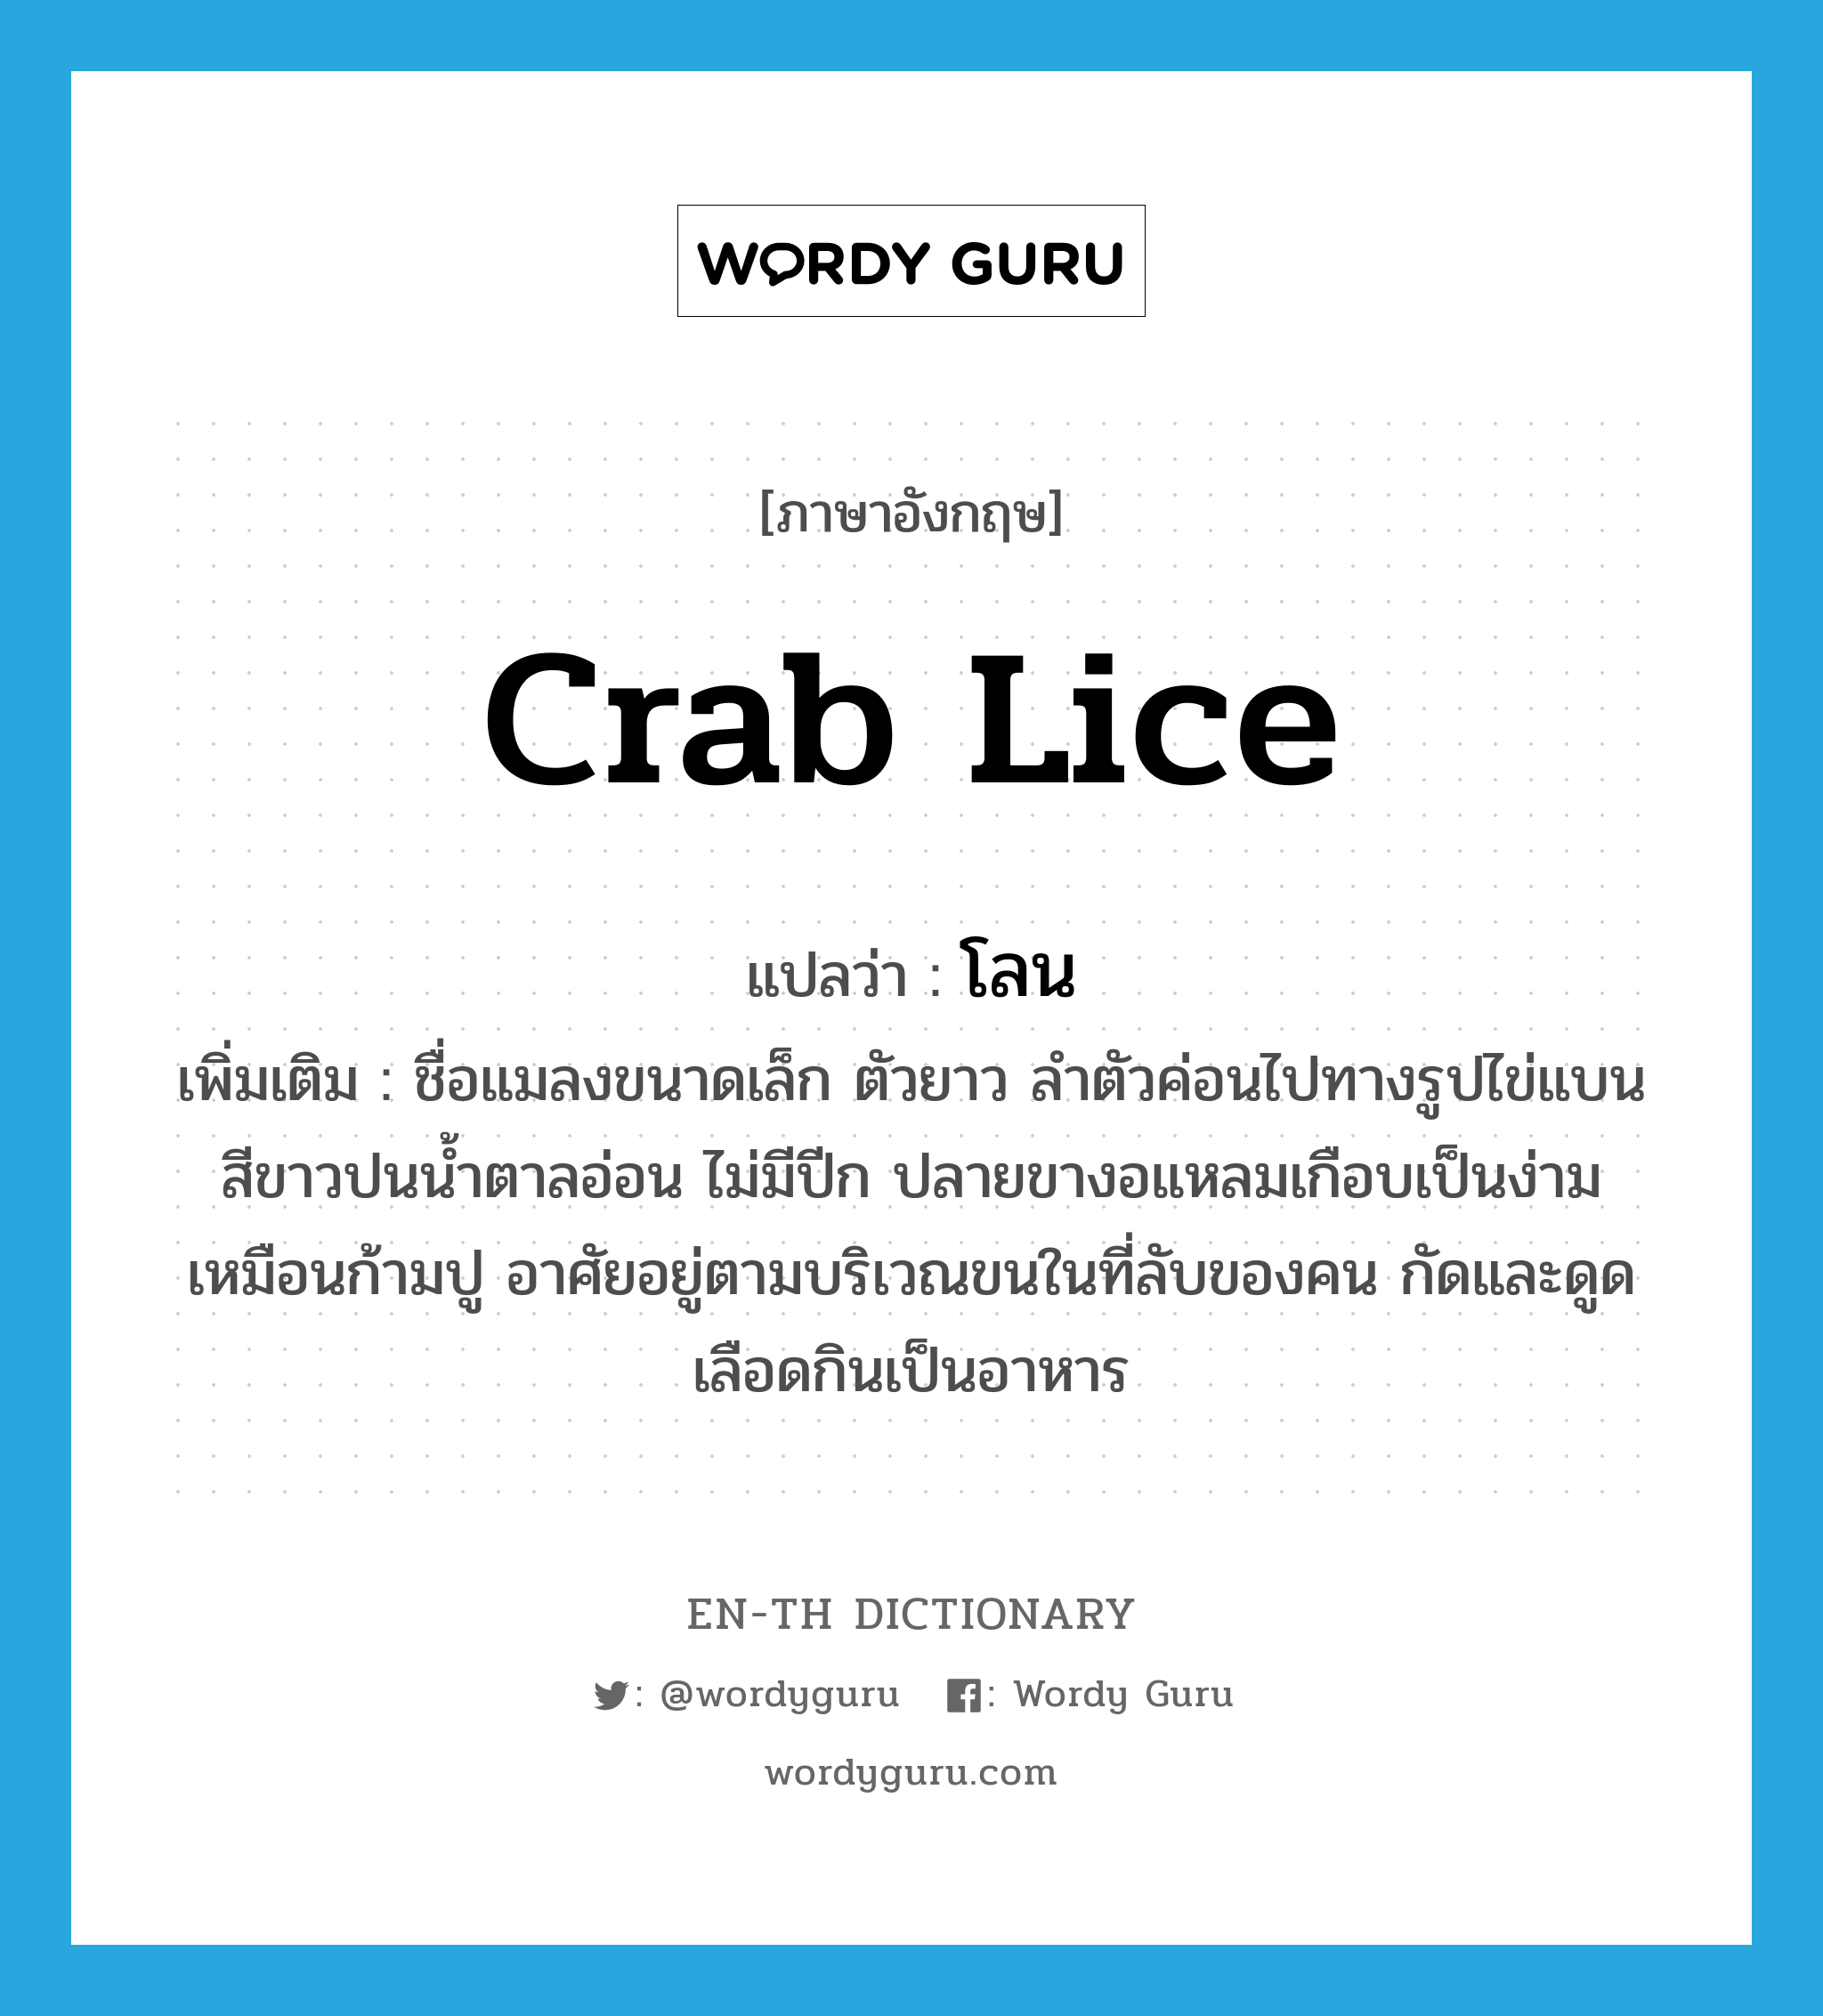 โลน ภาษาอังกฤษ?, คำศัพท์ภาษาอังกฤษ โลน แปลว่า crab lice ประเภท N เพิ่มเติม ชื่อแมลงขนาดเล็ก ตัวยาว ลำตัวค่อนไปทางรูปไข่แบน สีขาวปนน้ำตาลอ่อน ไม่มีปีก ปลายขางอแหลมเกือบเป็นง่ามเหมือนก้ามปู อาศัยอยู่ตามบริเวณขนในที่ลับของคน กัดและดูดเลือดกินเป็นอาหาร หมวด N